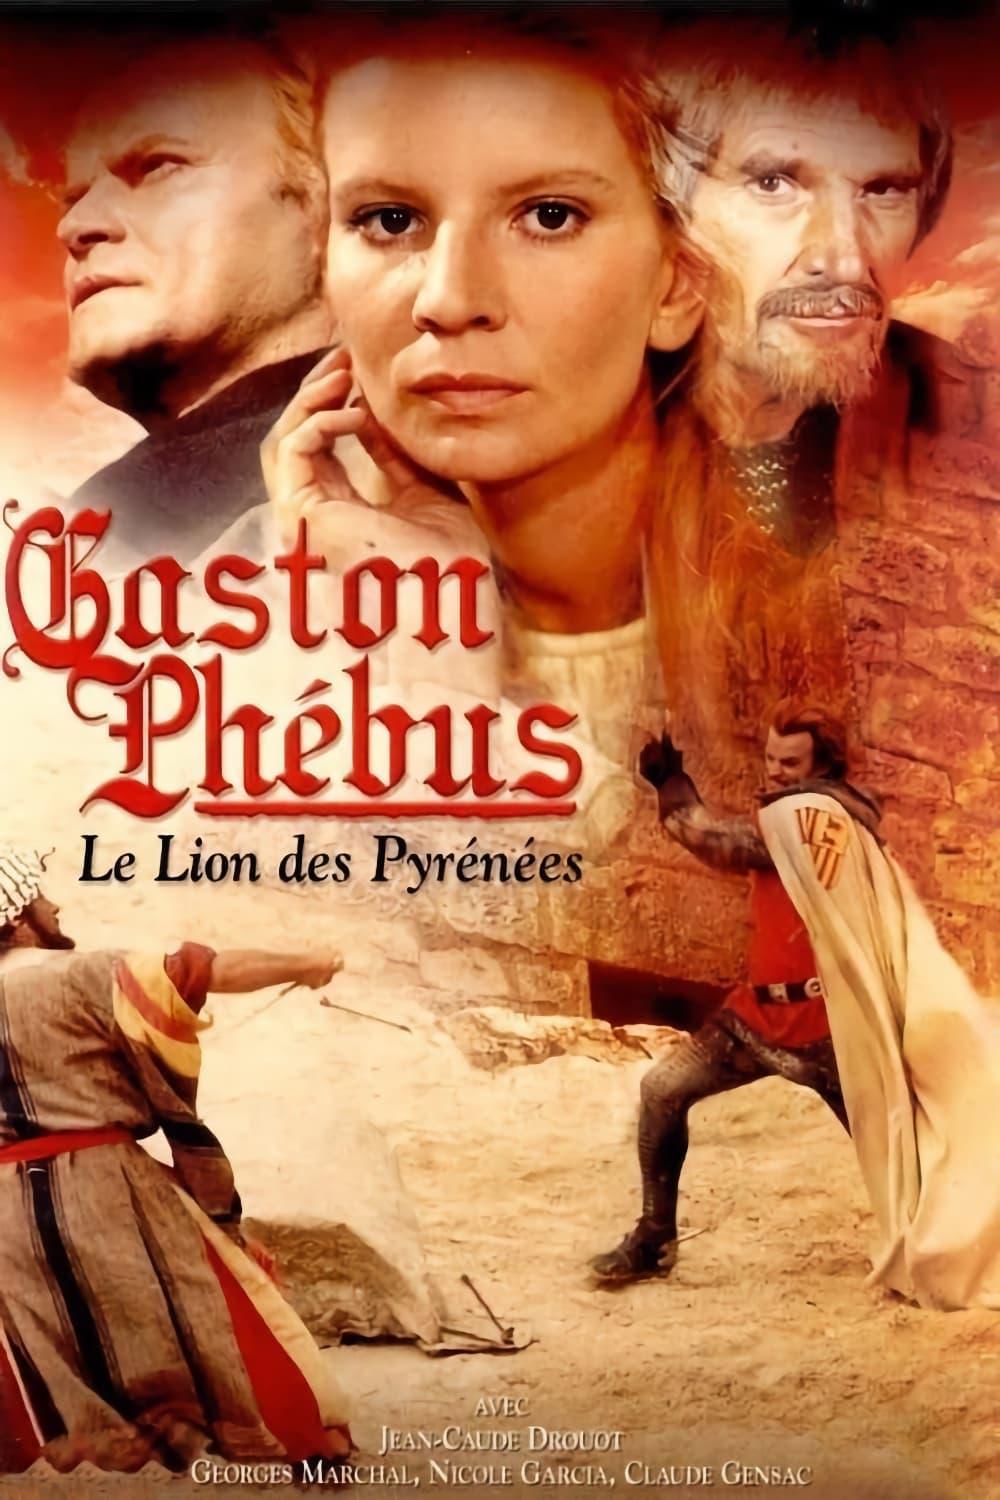 Les saisons de Gaston Phébus sont-elles disponibles sur Netflix ou autre ?